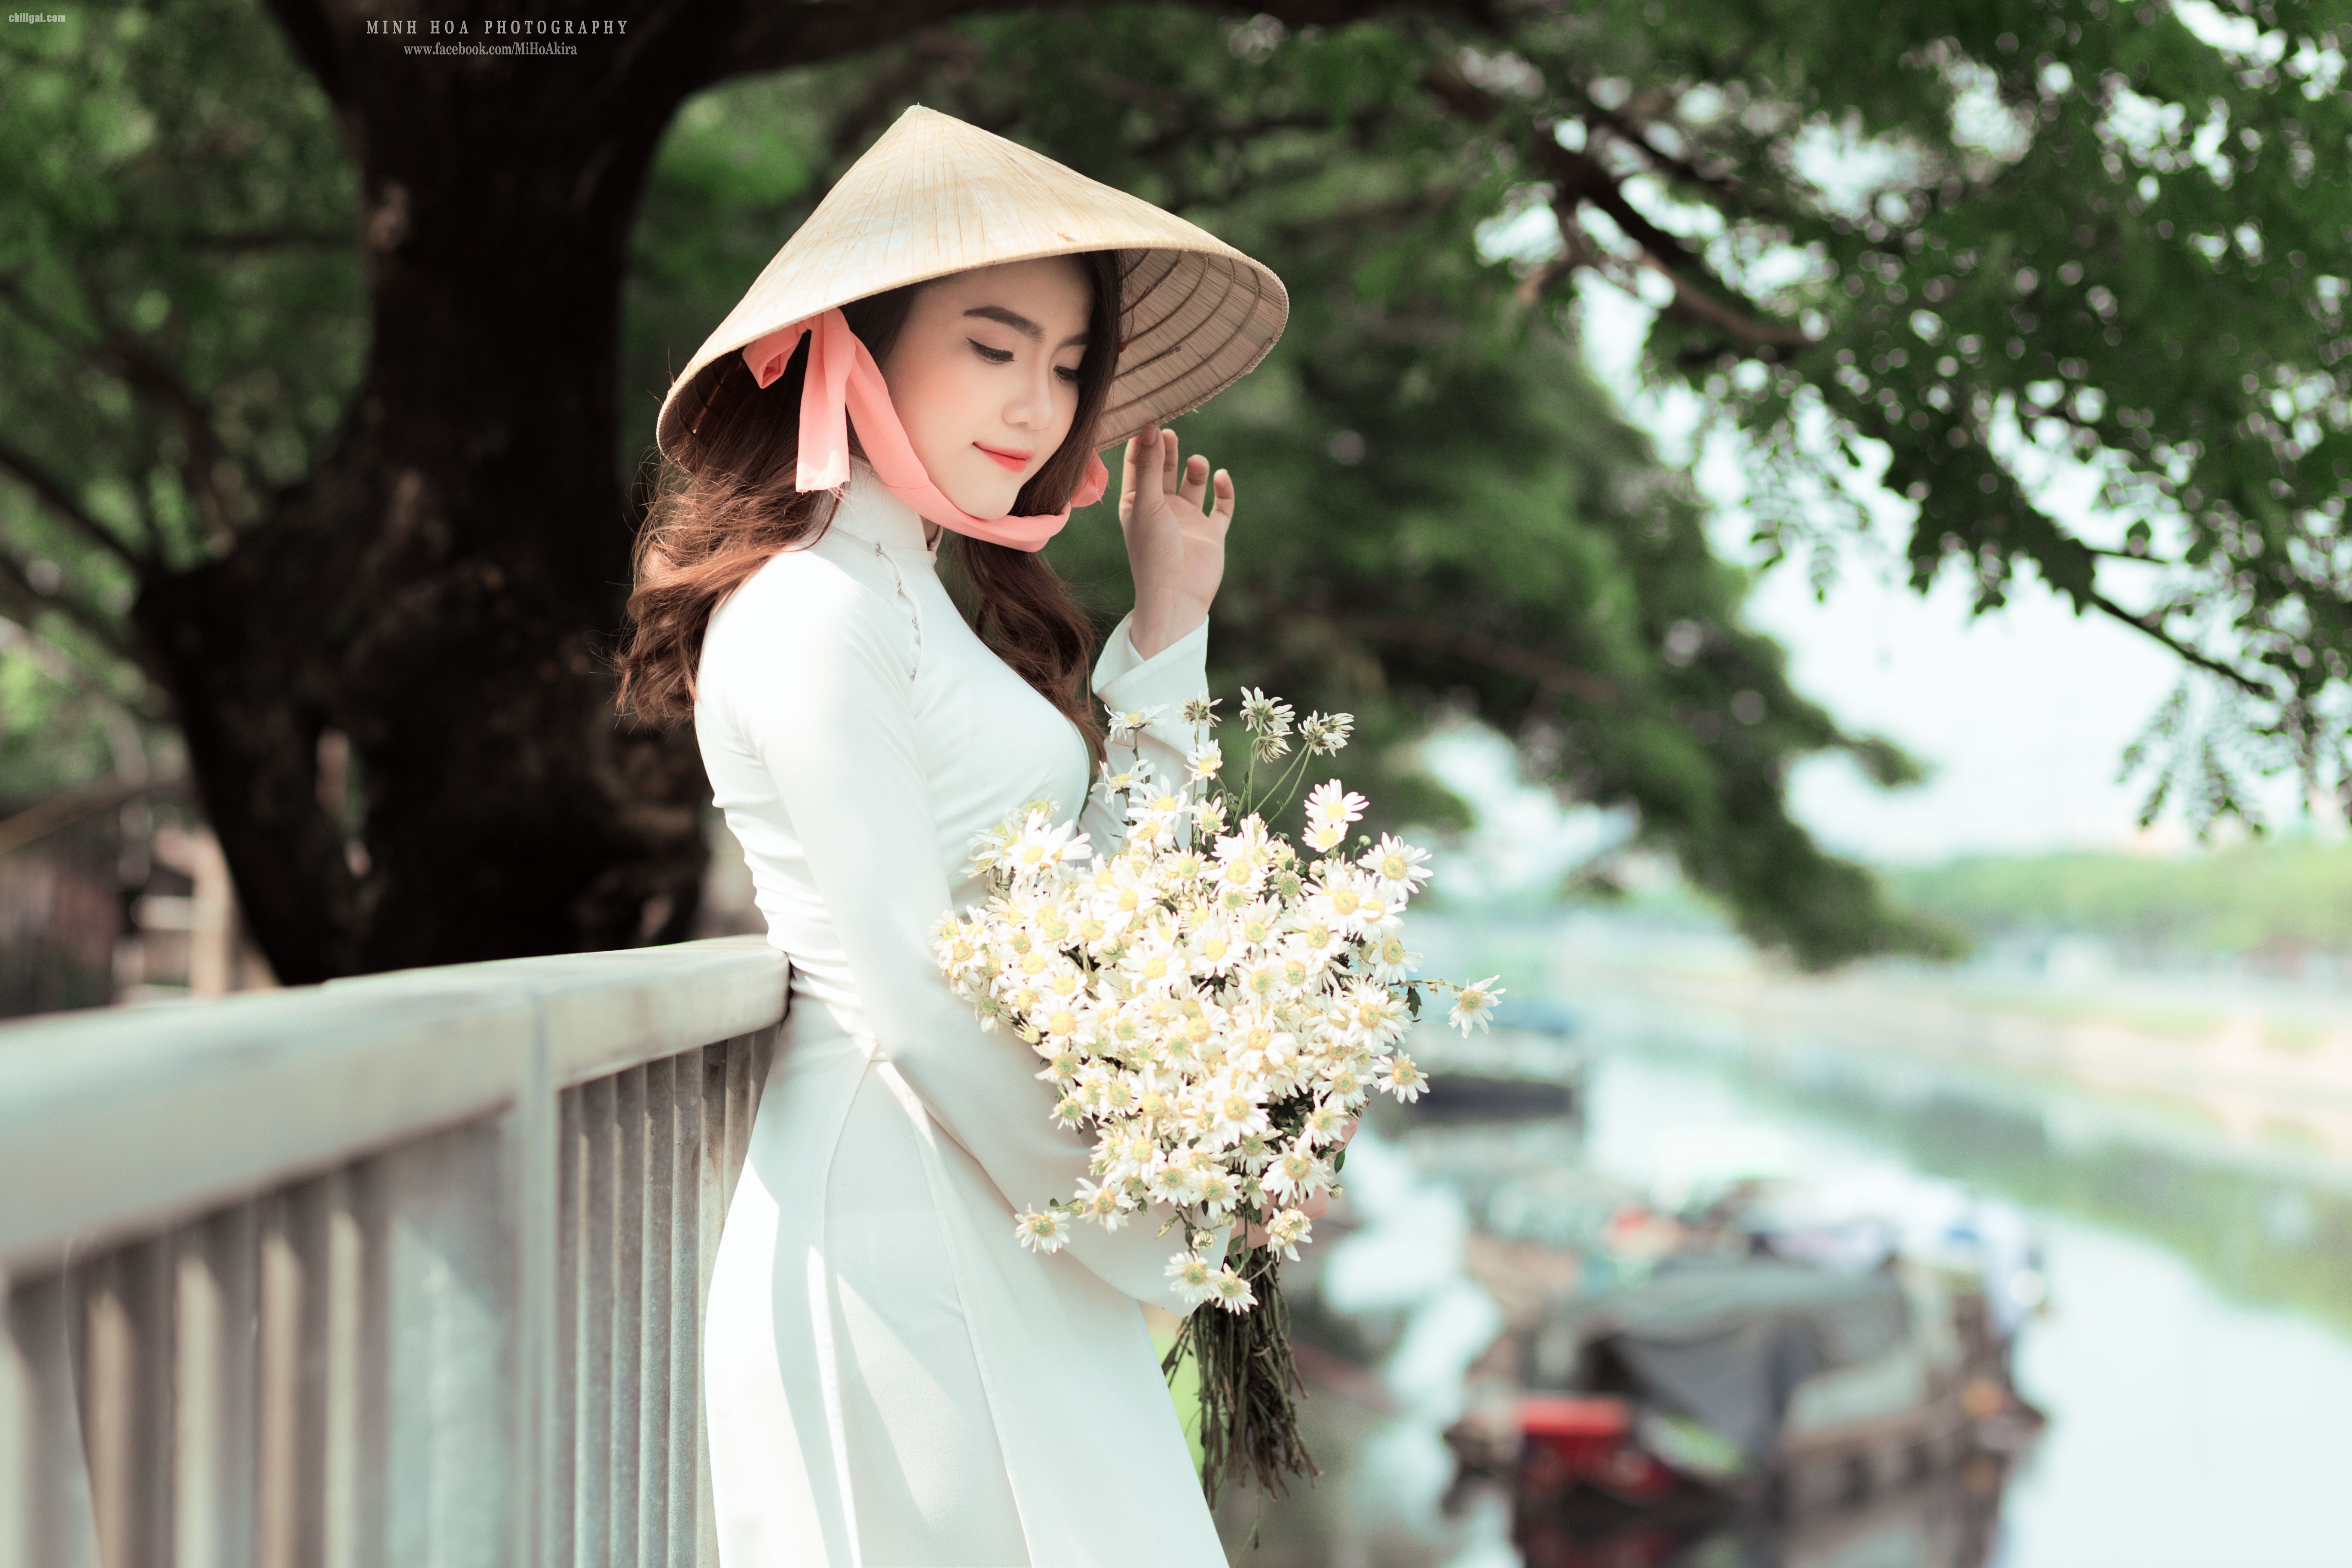 Tuyển tập girl xinh gái đẹp Việt Nam mặc áo dài đẹp mê hồn #159